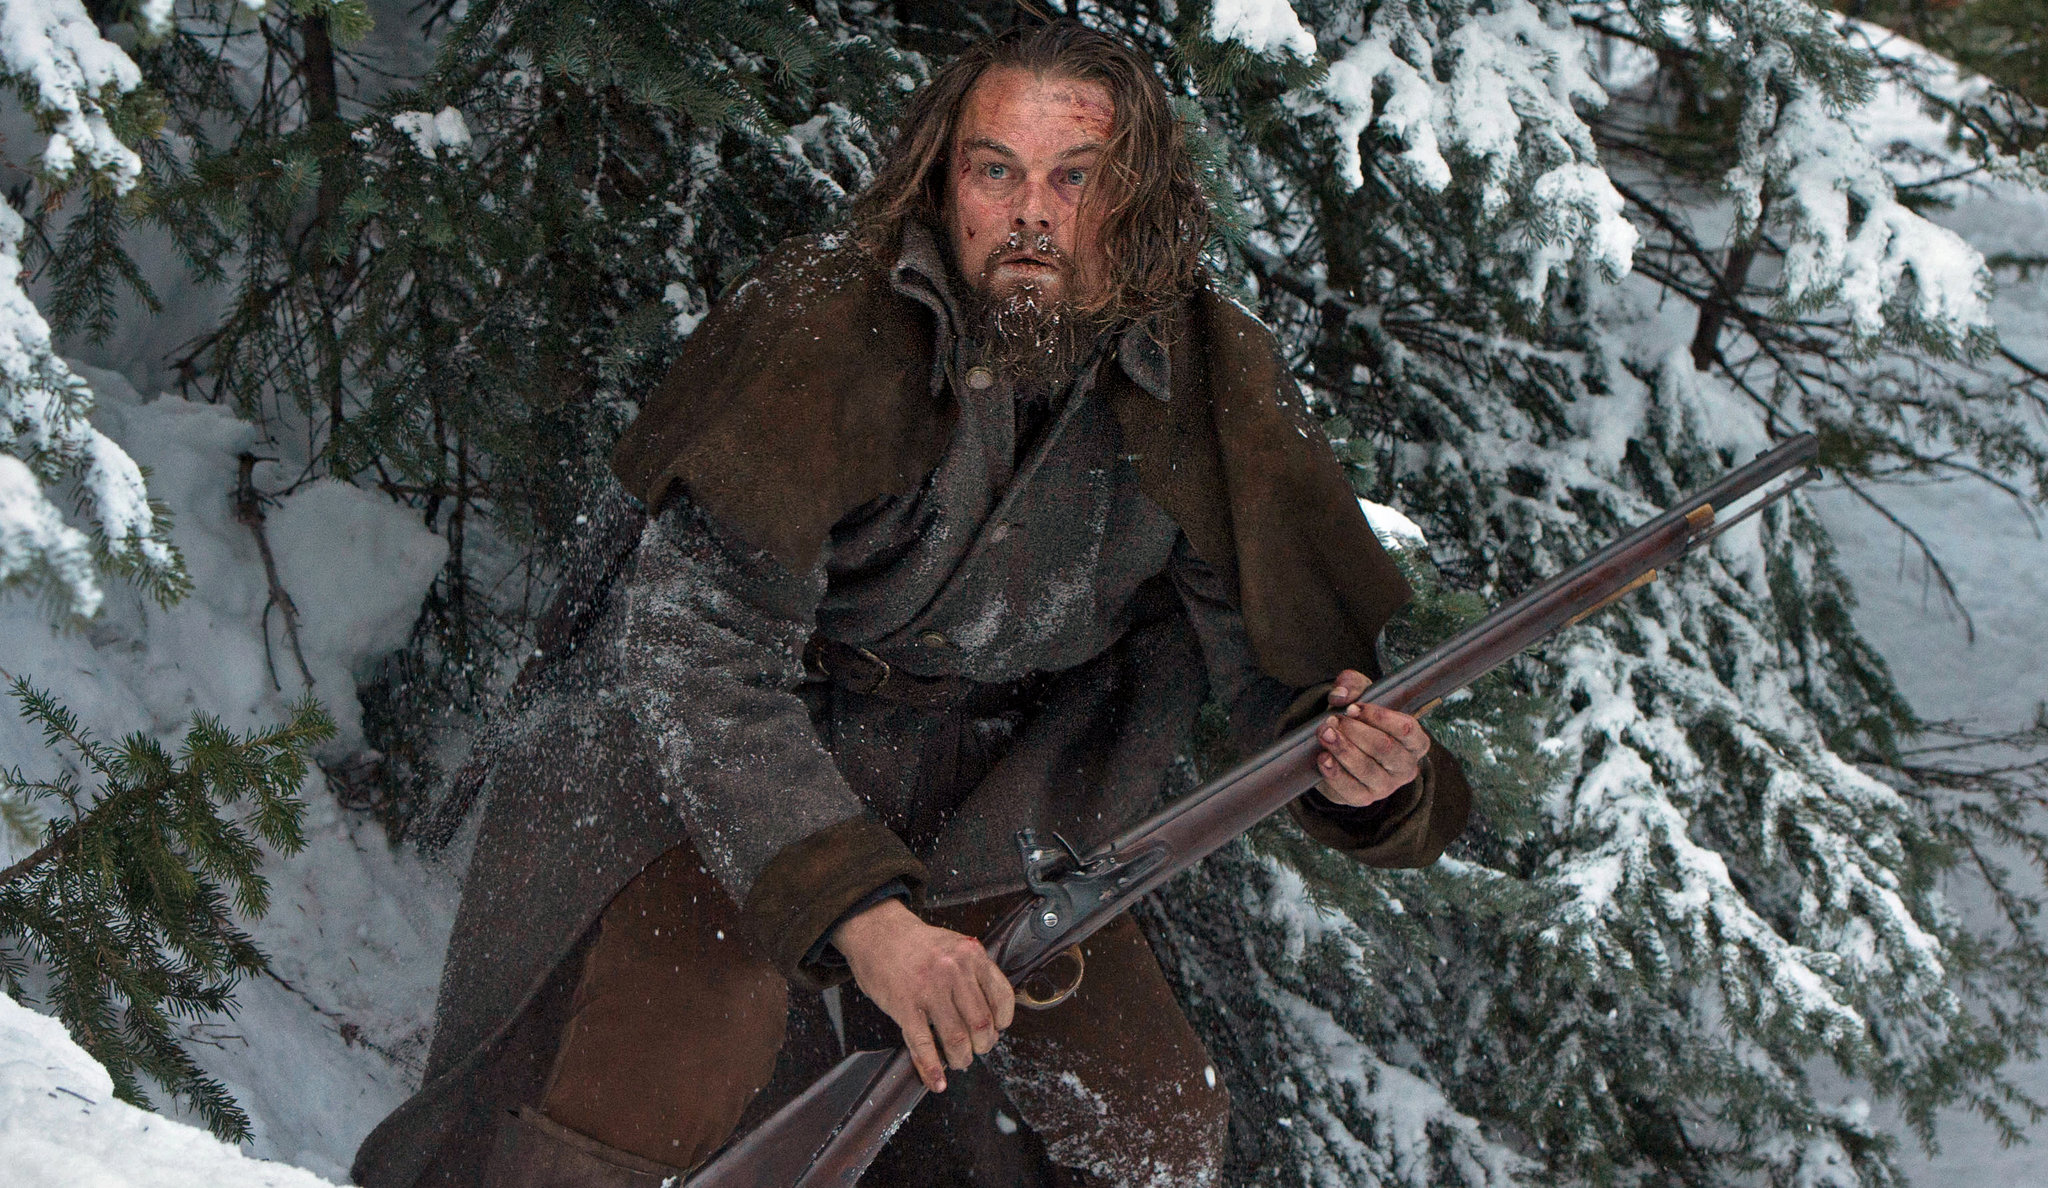 Leonardo DiCaprio acting in the Revenant film